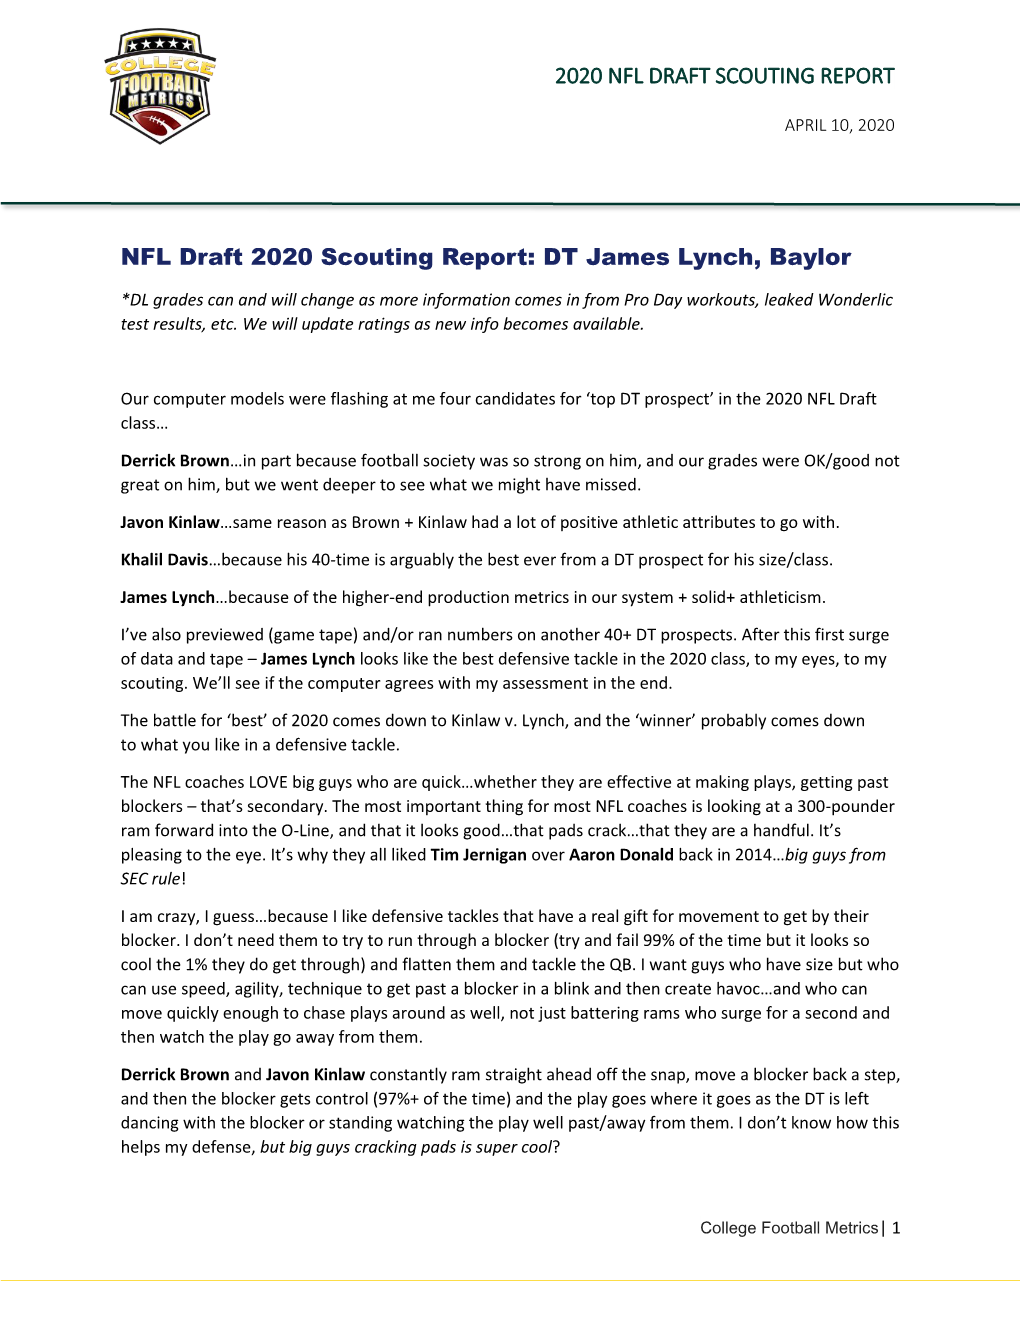 2020 NFL DRAFT SCOUTING REPORT NFL Draft 2020 Scouting Report: DT James Lynch, Baylor